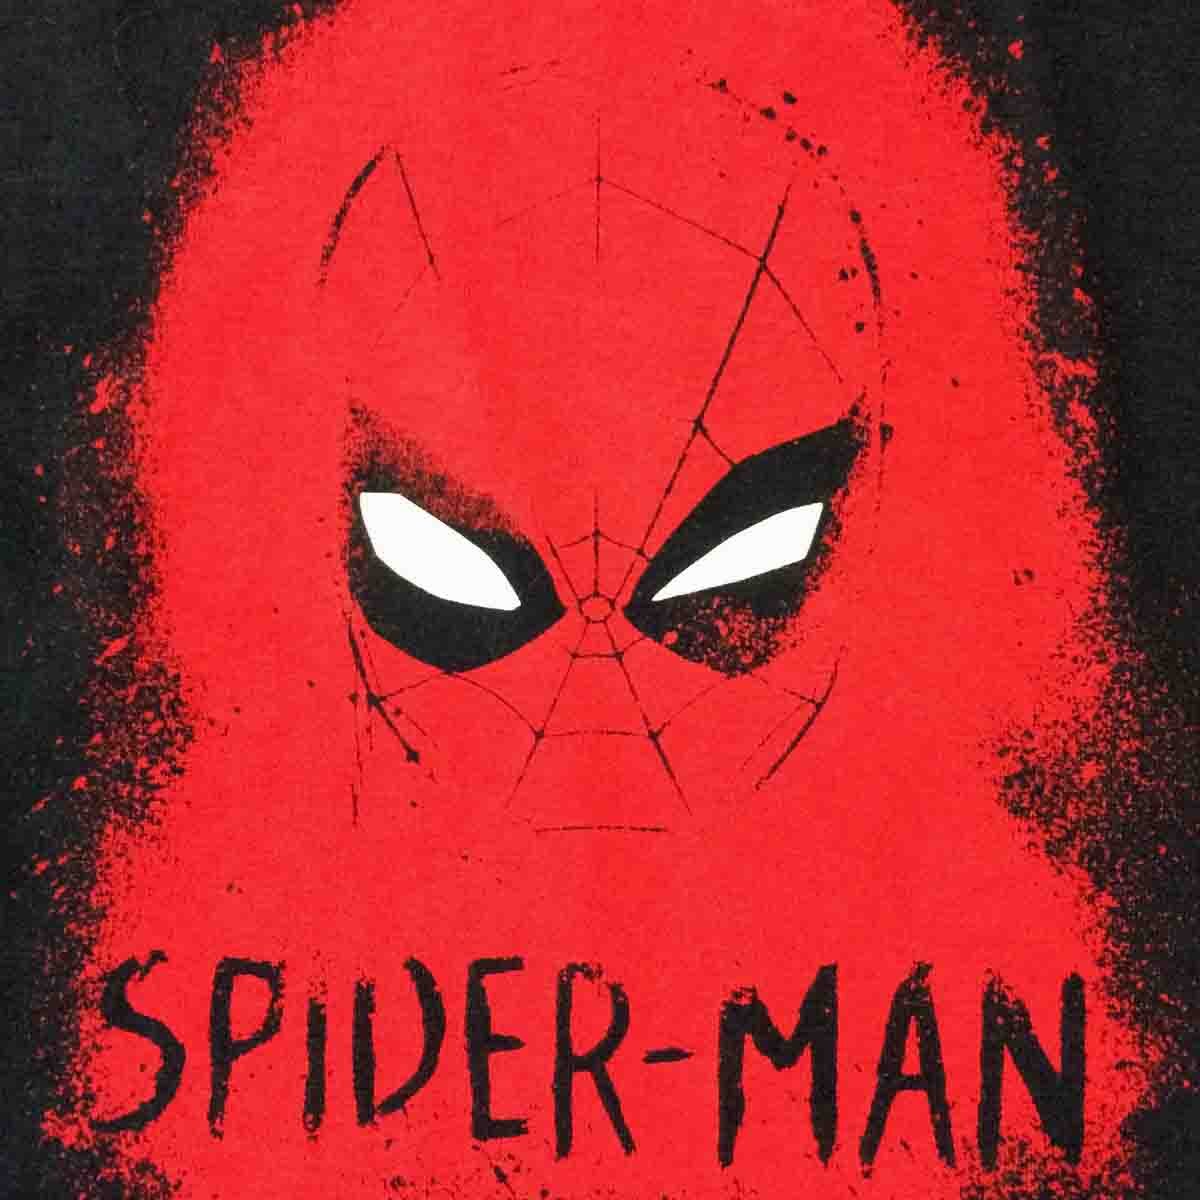 Pijama para Beb&eacute; Spiderman